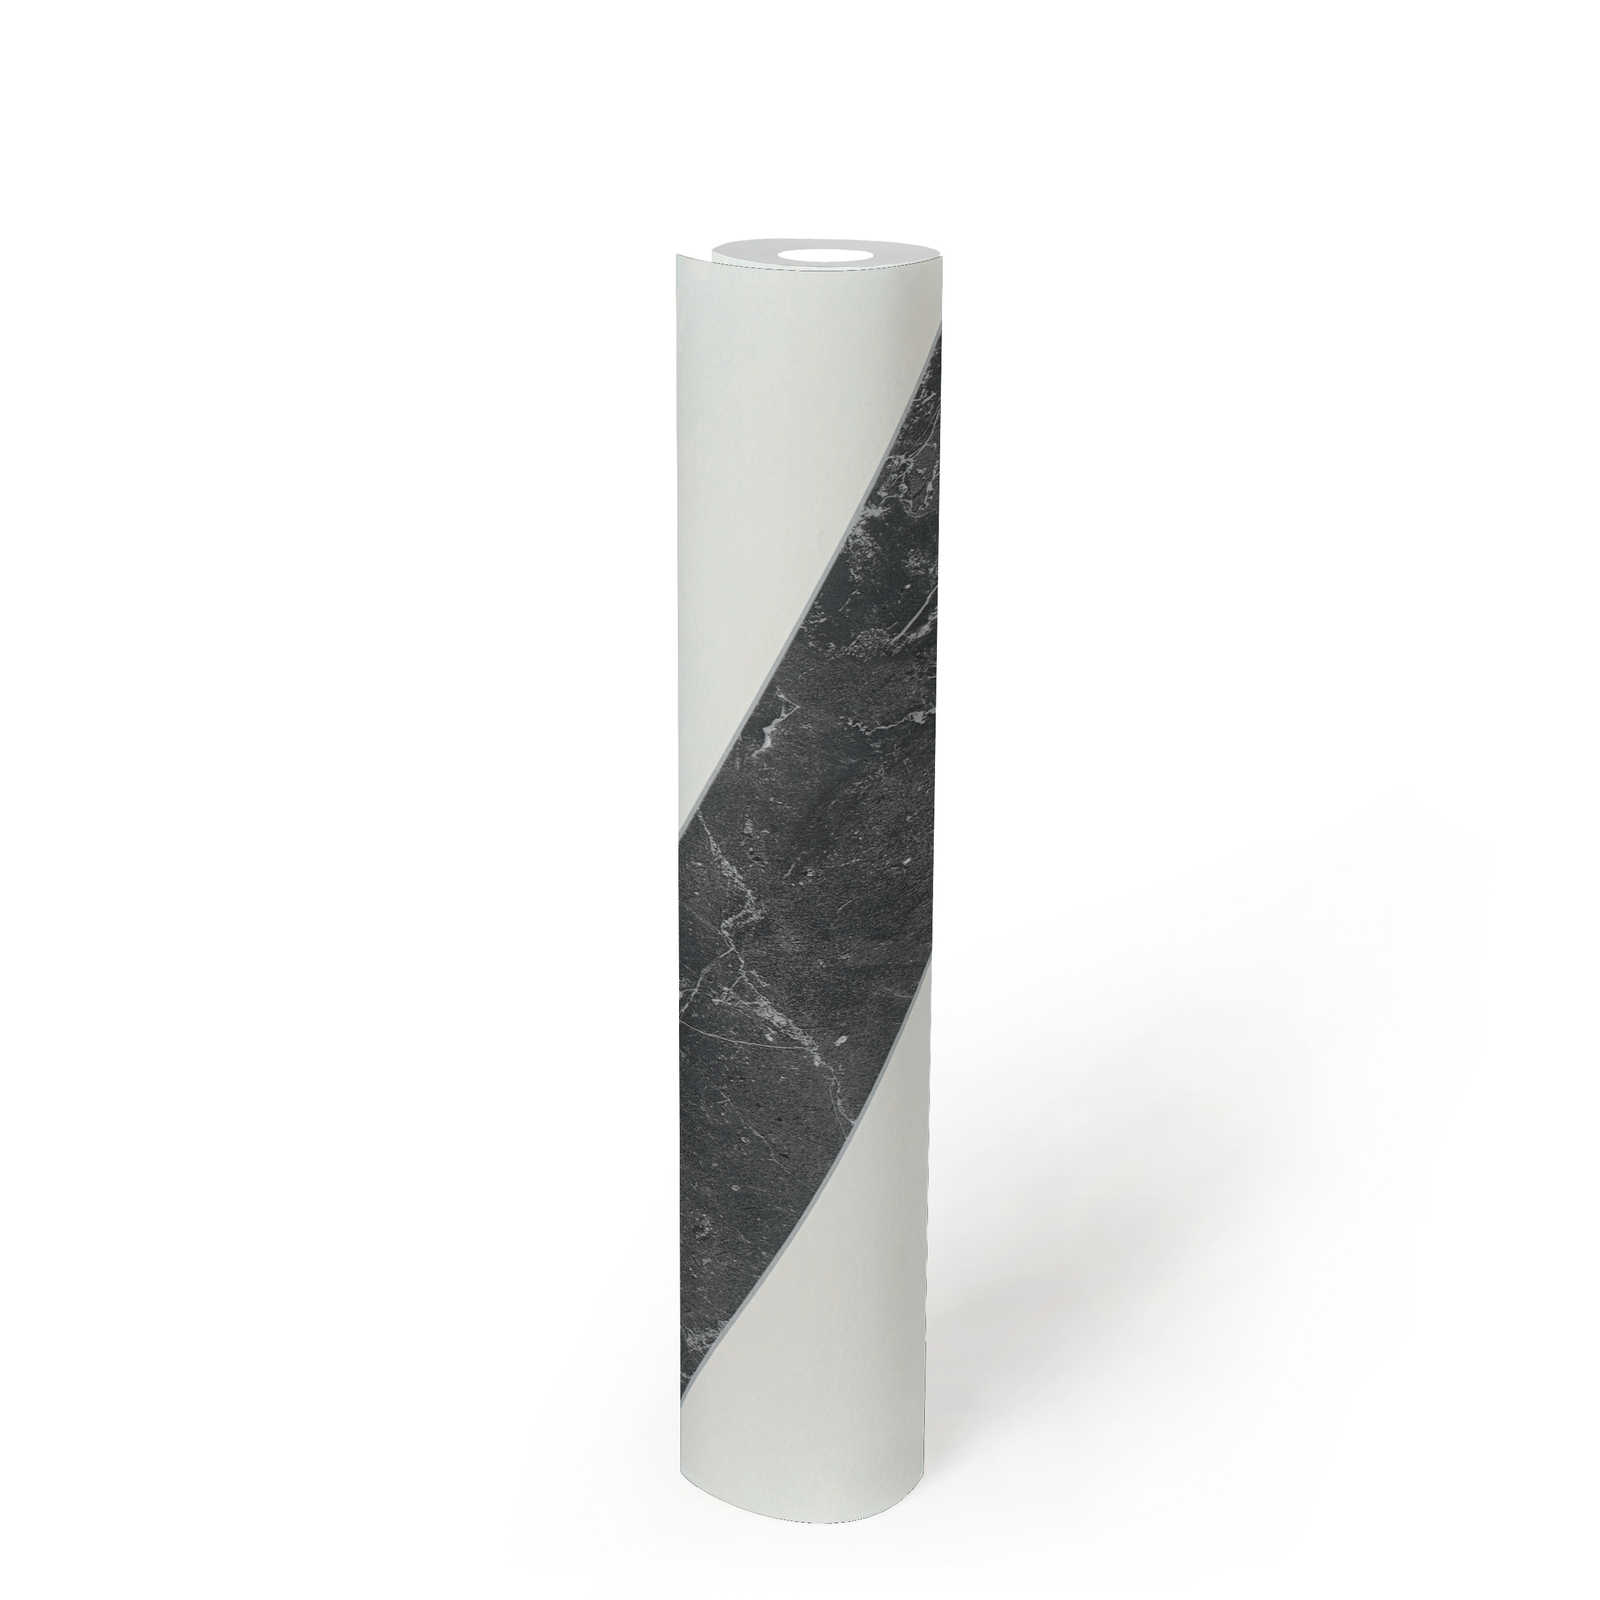             Streifen Tapete Marmoroptik Querstreifen Schwarz-Weiß Design
        